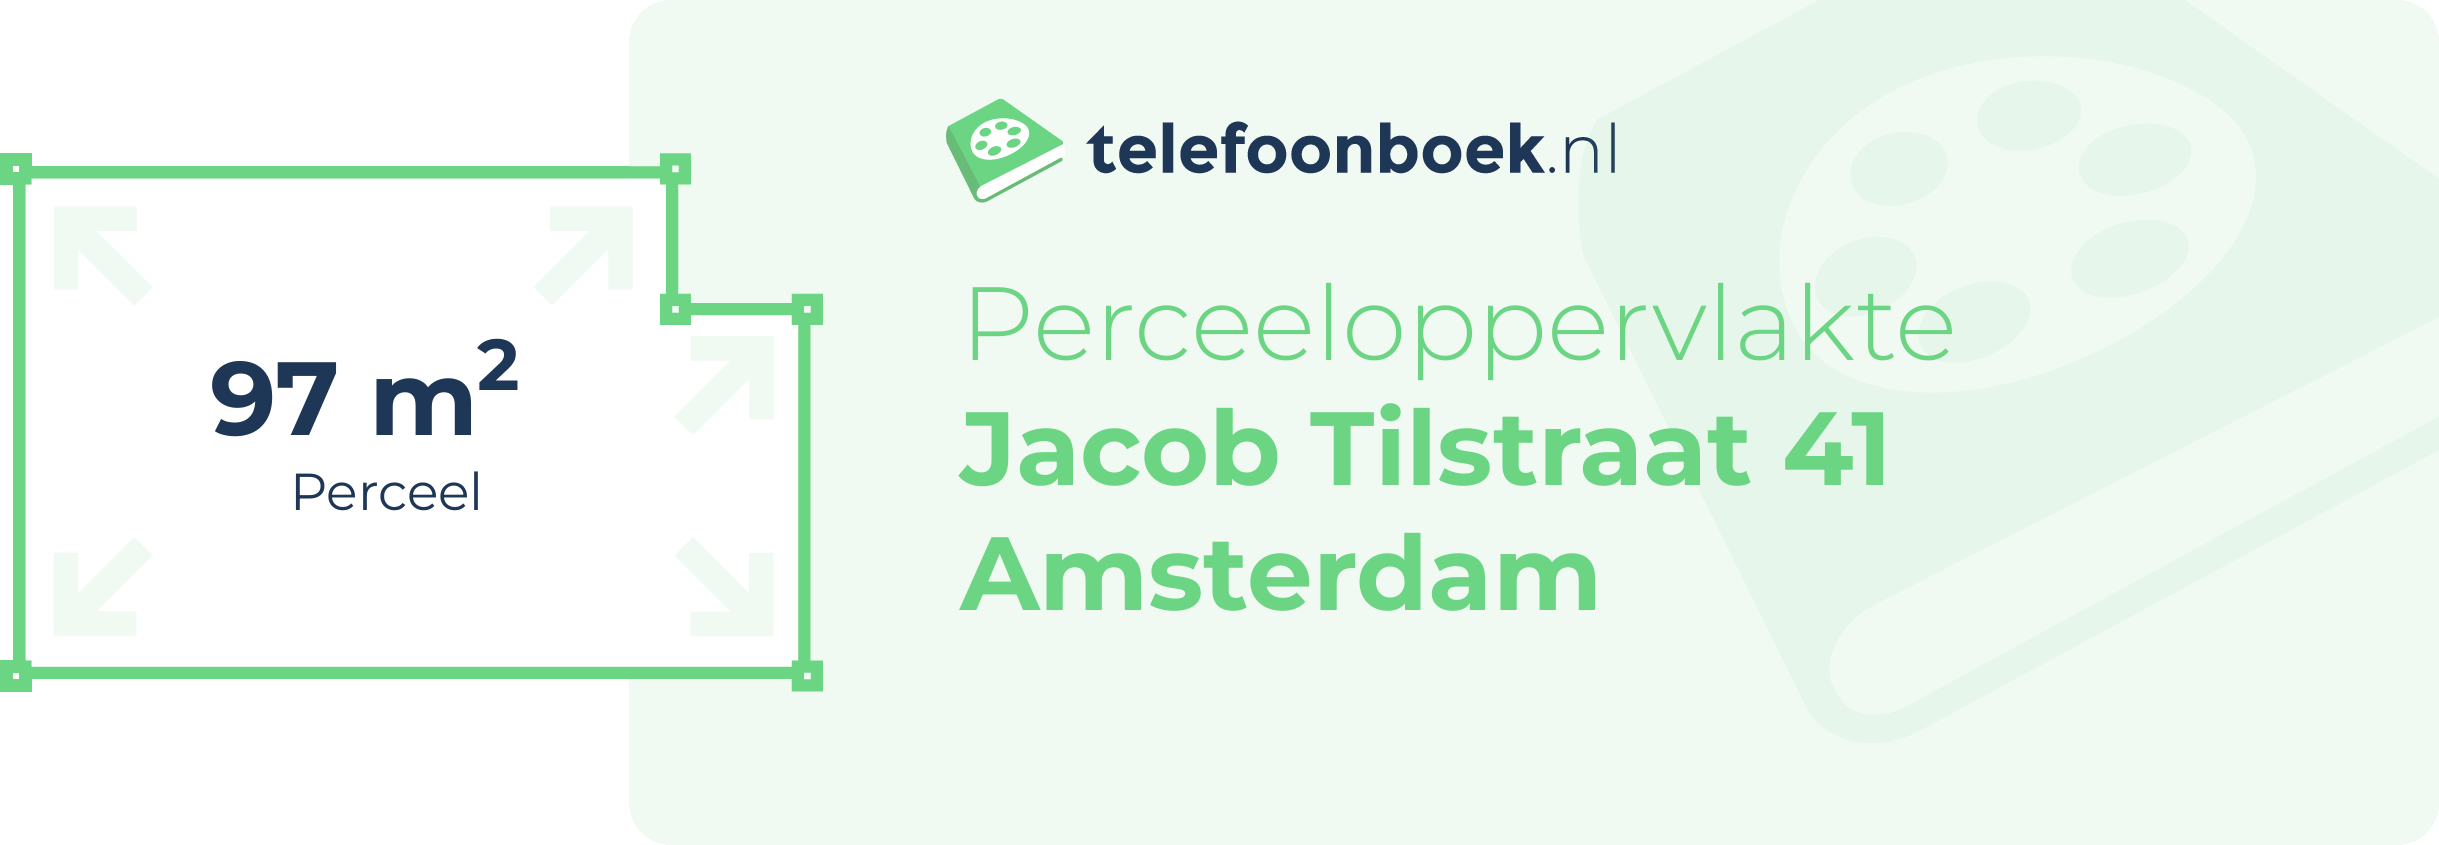 Perceeloppervlakte Jacob Tilstraat 41 Amsterdam